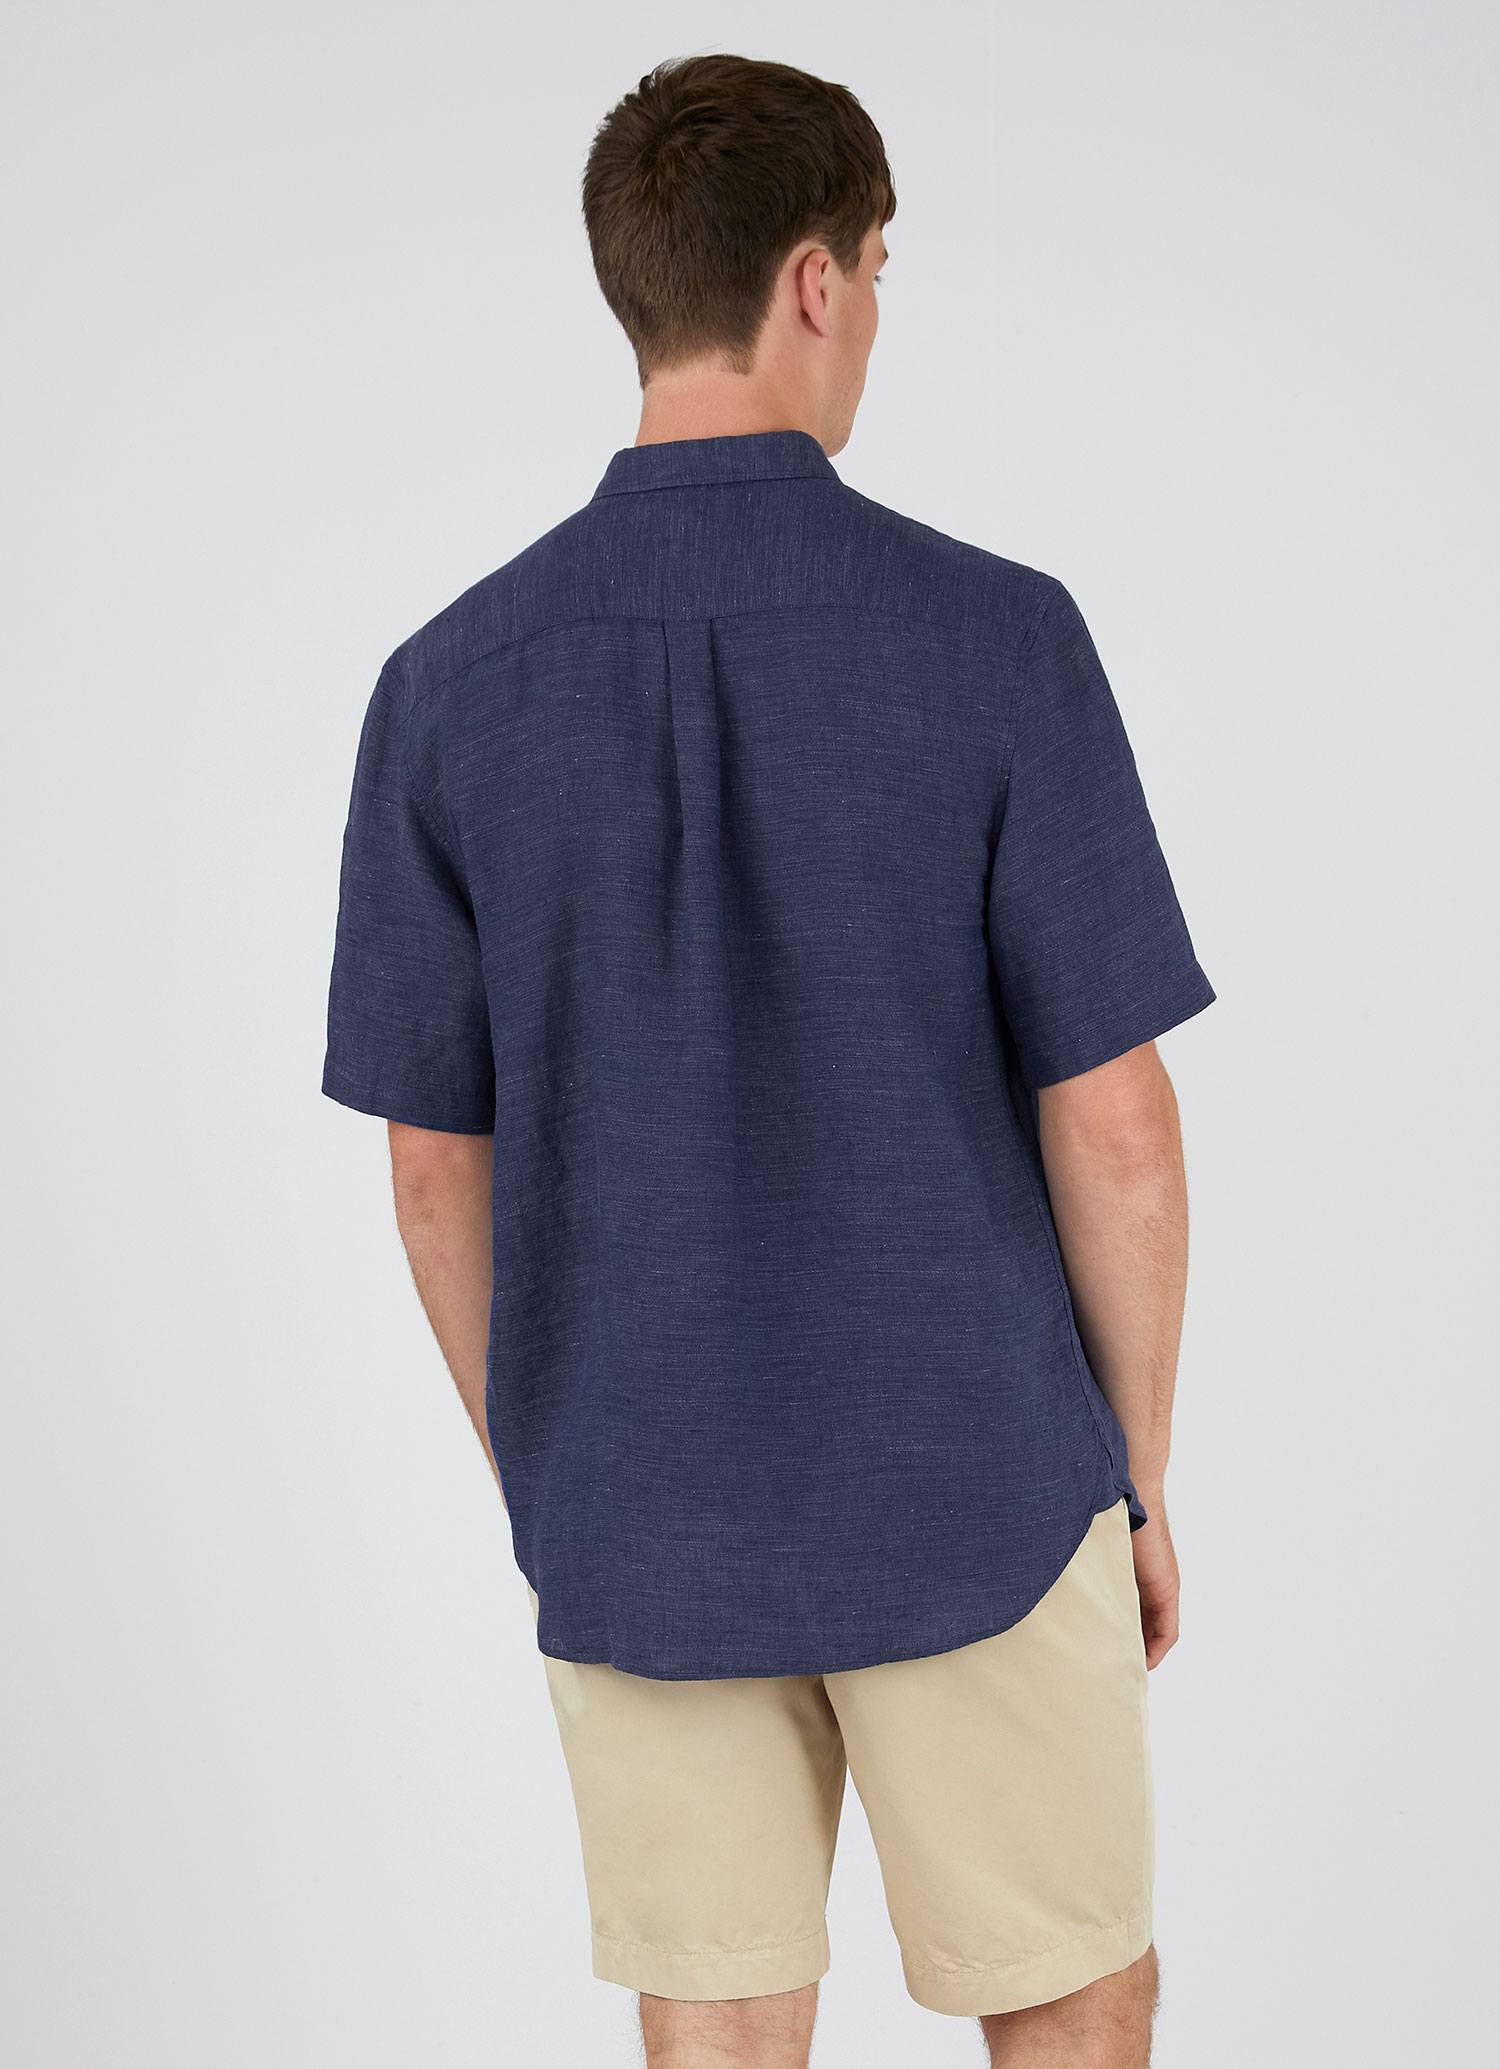 Men's Short Sleeve Linen Shirt in Navy Melange